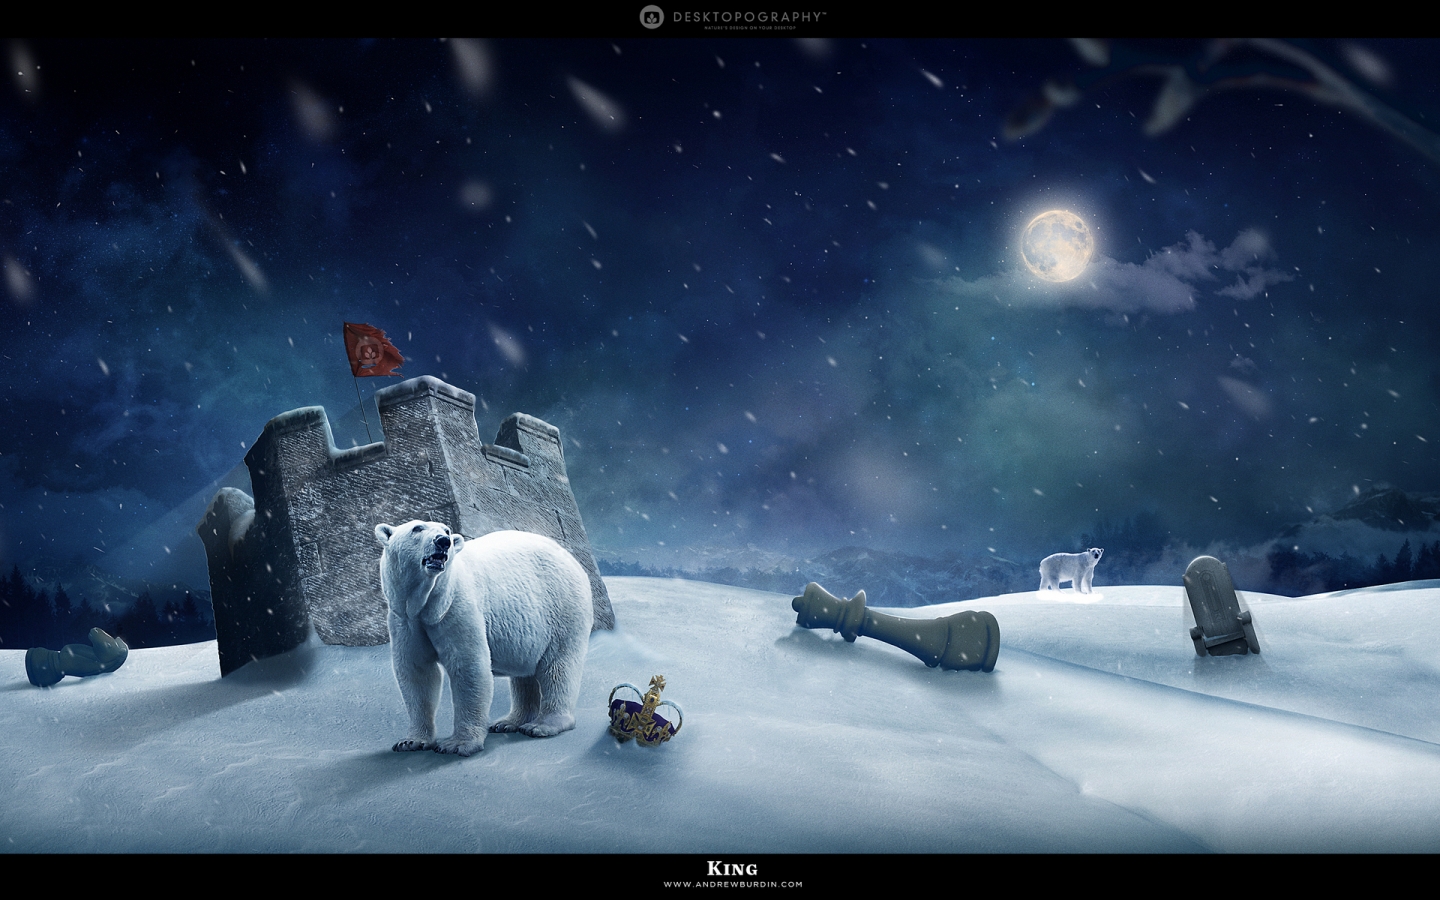 Polar king for 1440 x 900 widescreen resolution